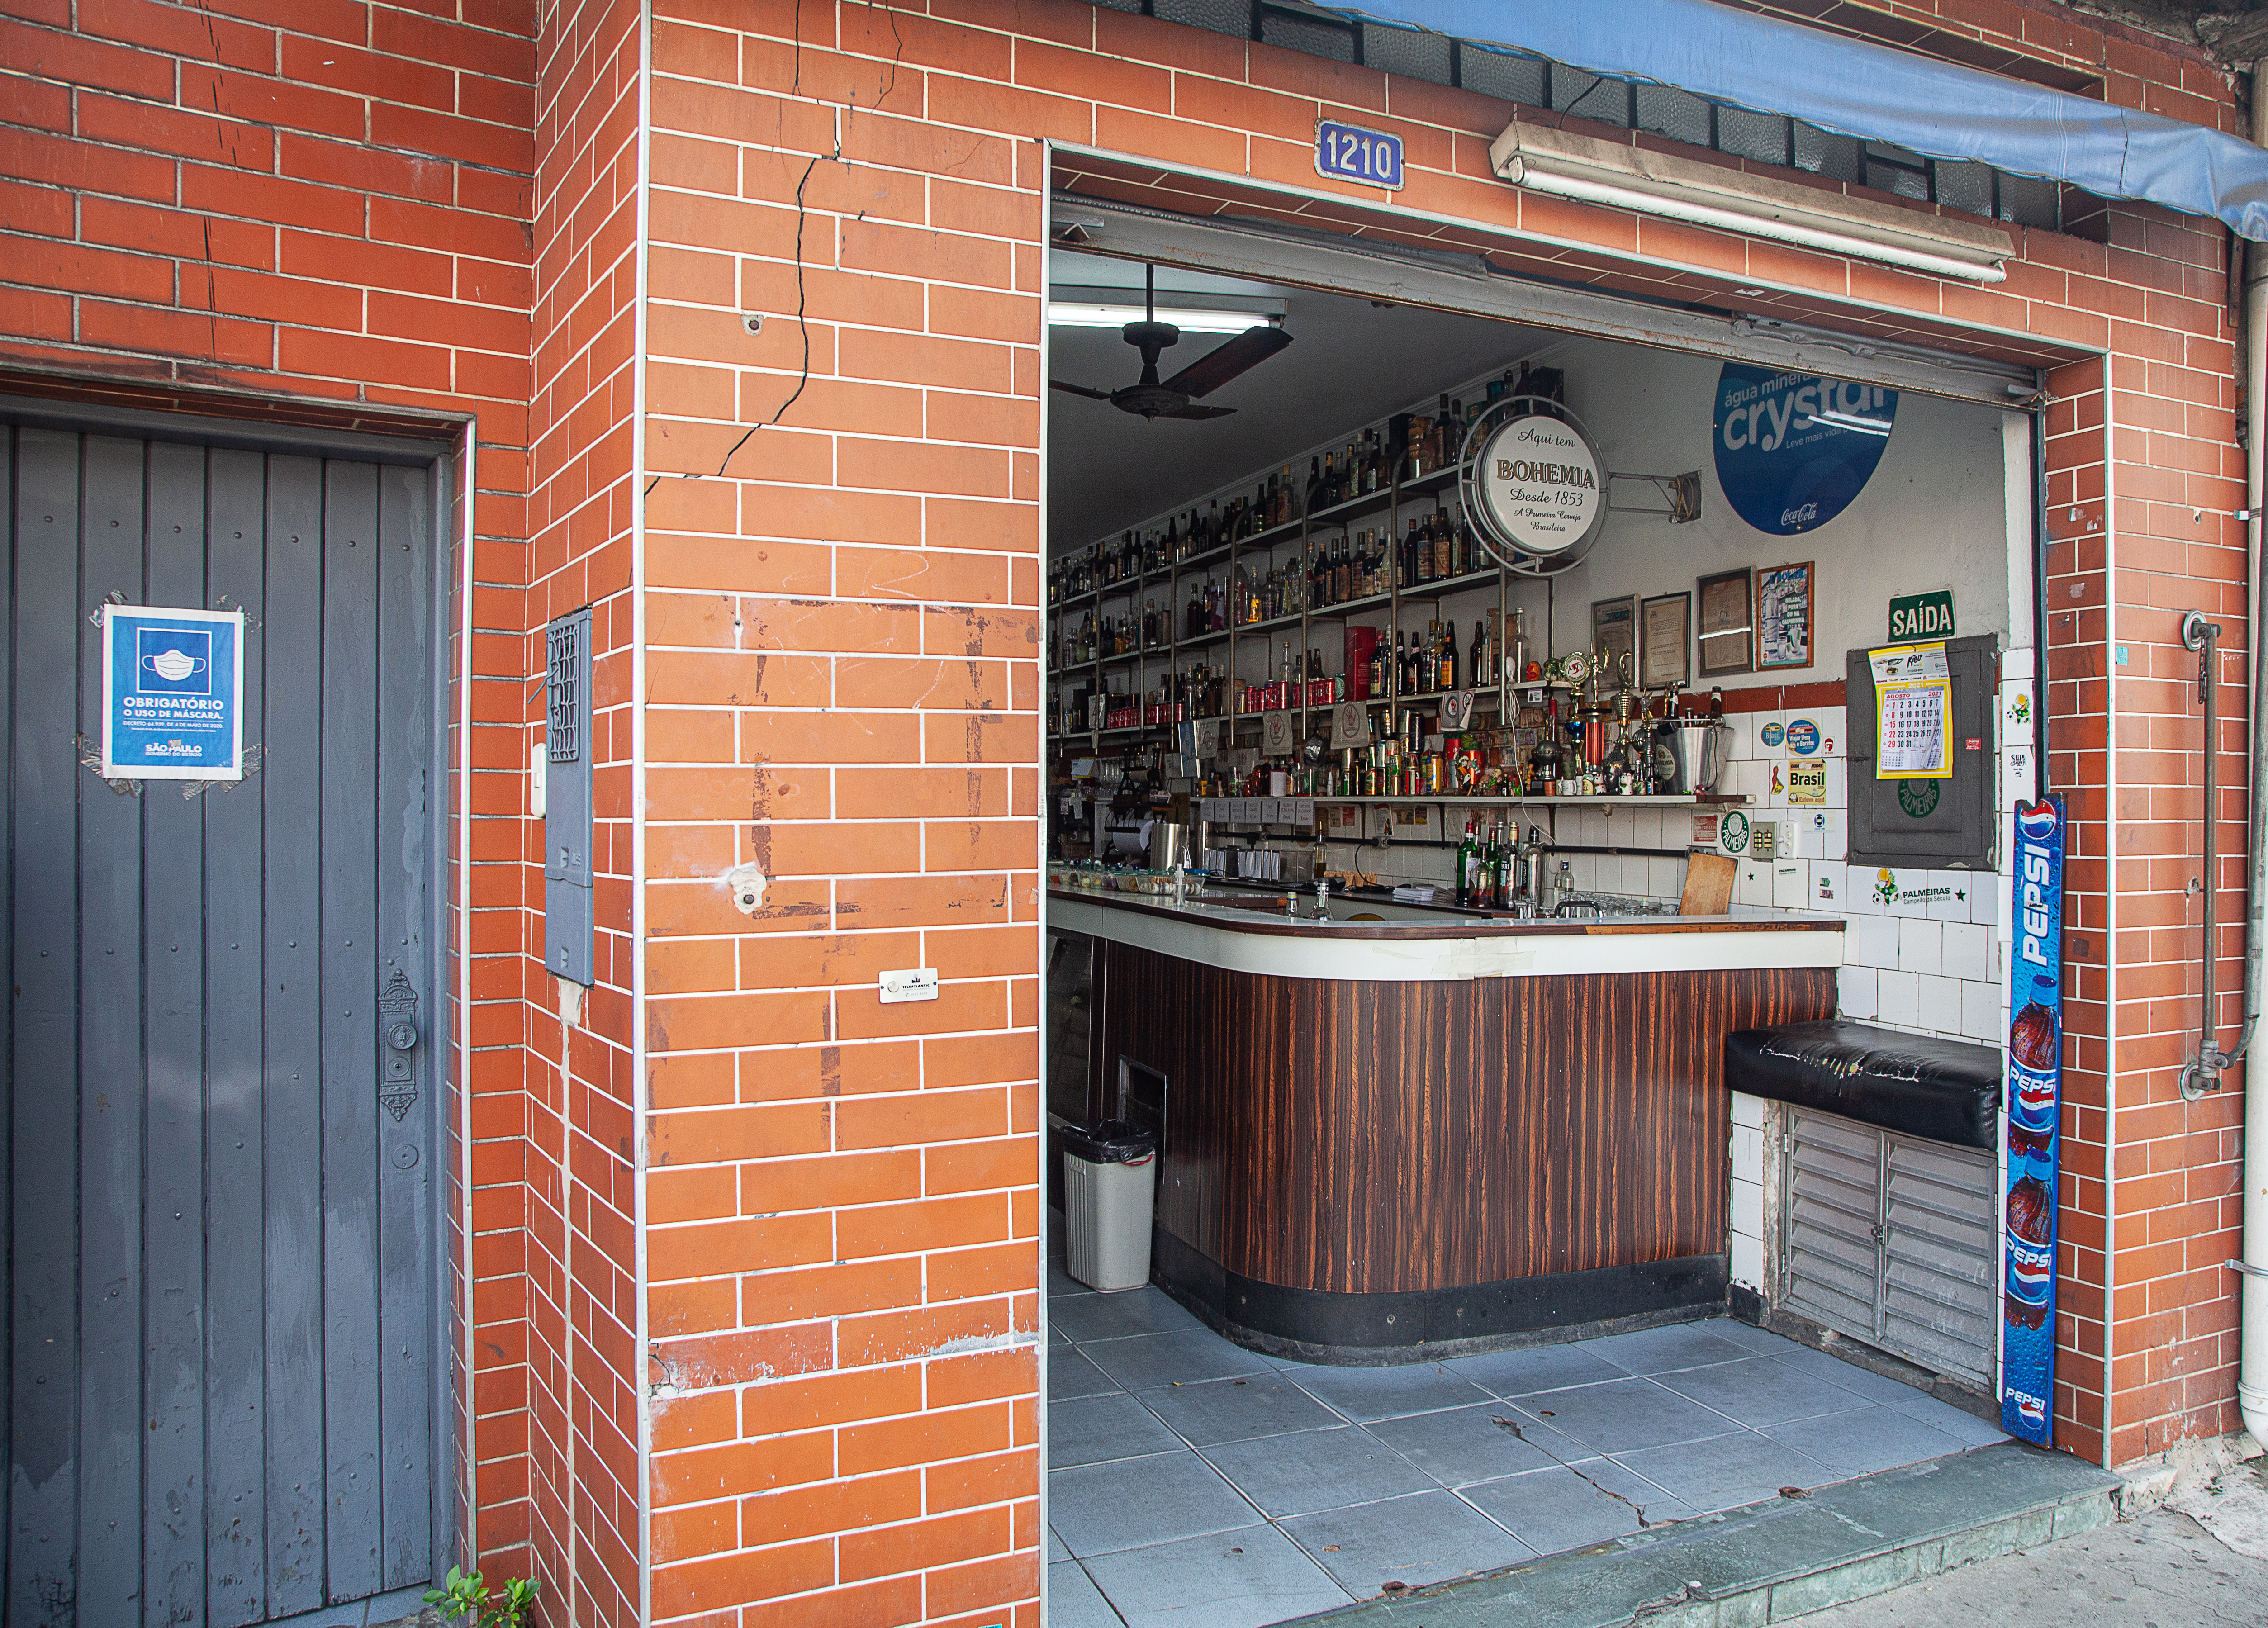 Fachada do Bar do Luiz Nozoie, com azulejos alaranjados.